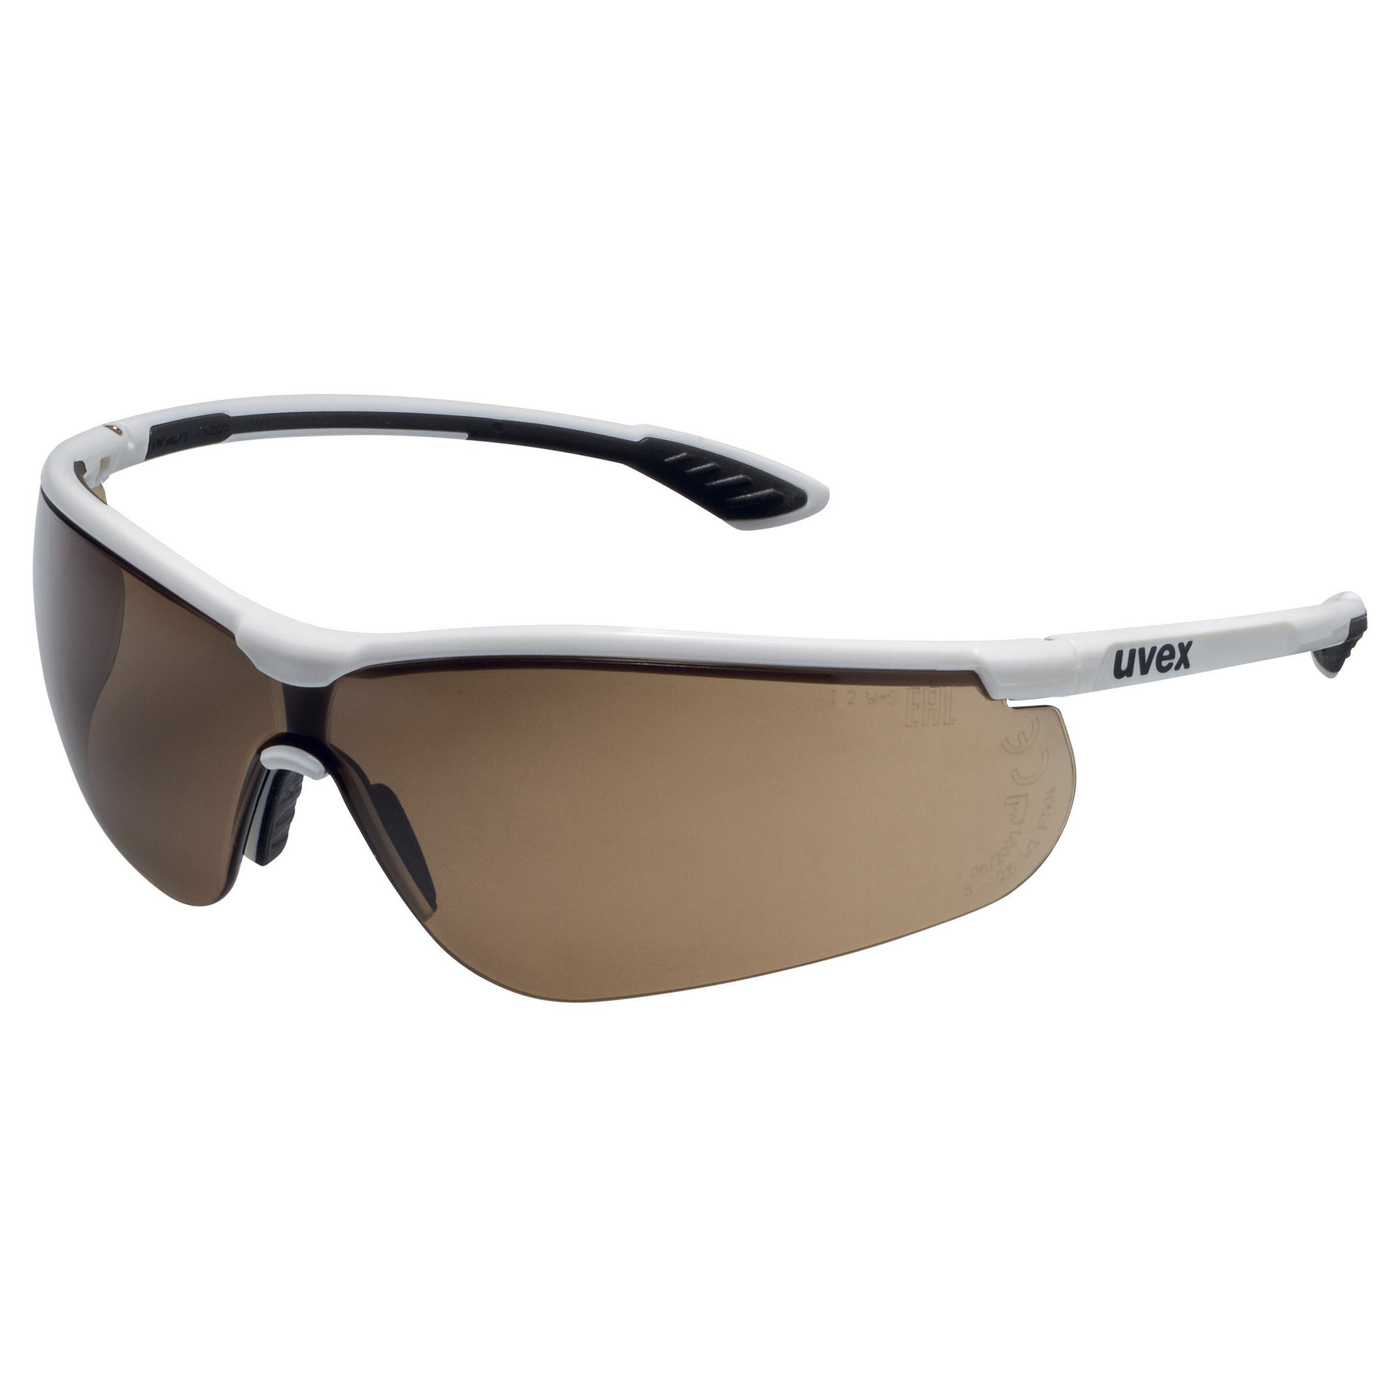 uvex sportstyle spectales Schutzbrille, Scheibe braun, F. weiß - 1 Stück